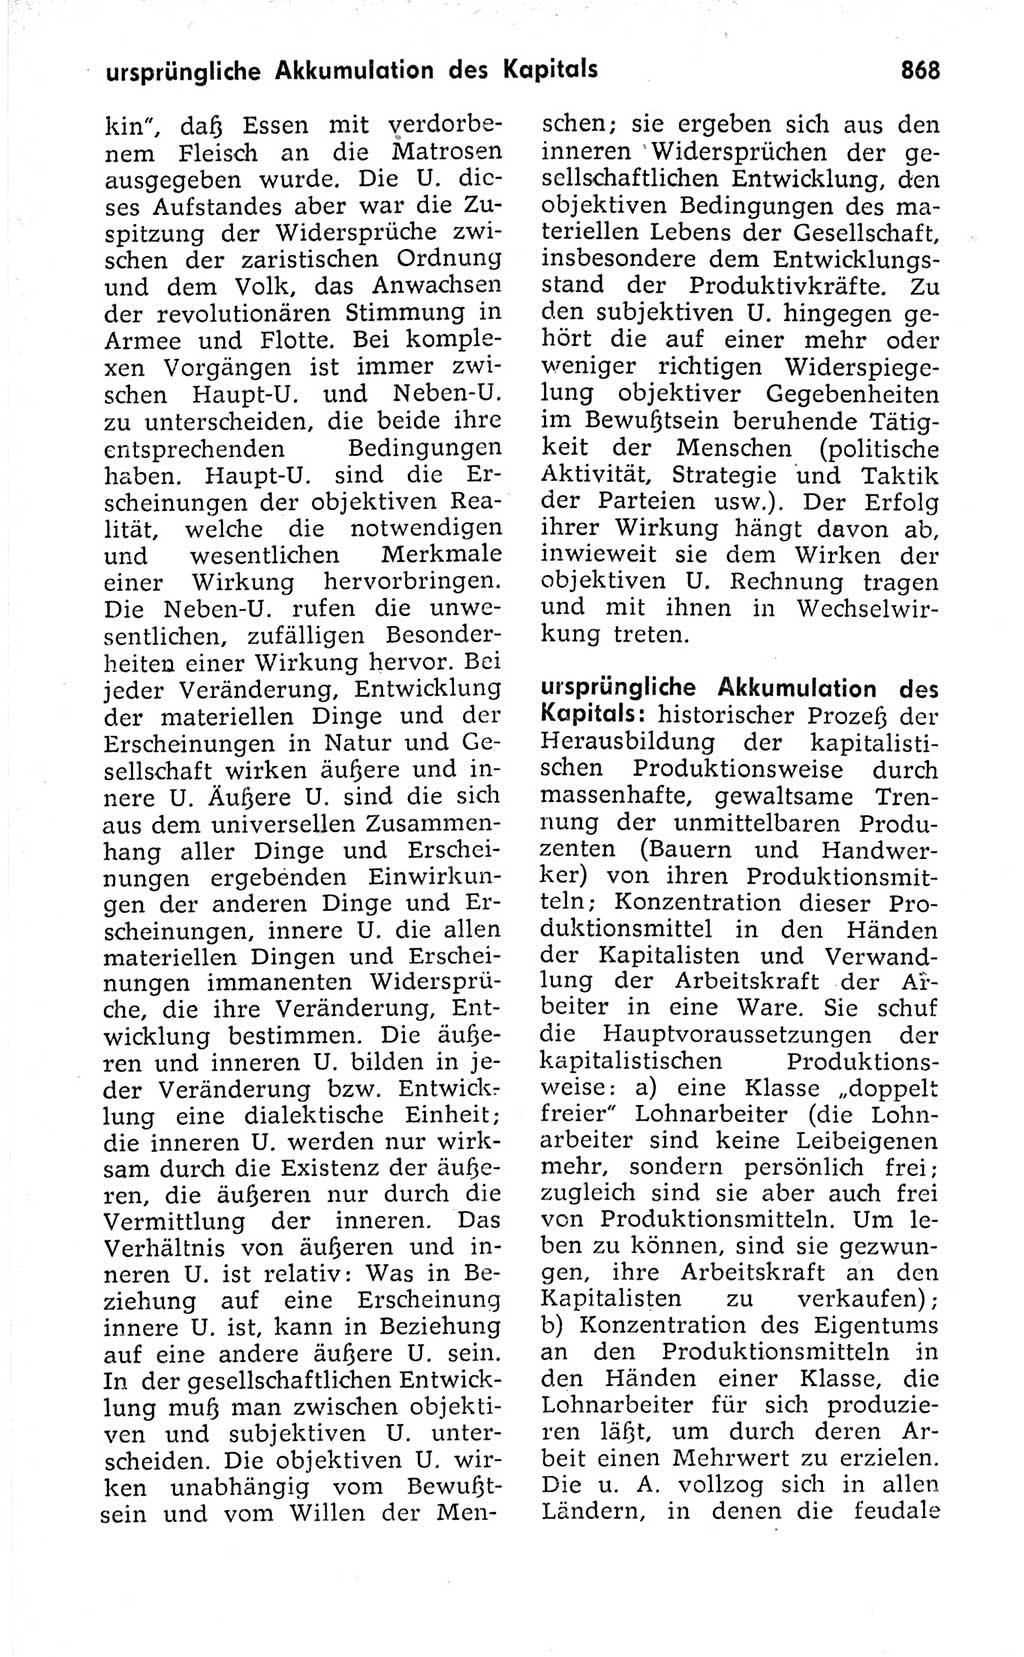 Kleines politisches Wörterbuch [Deutsche Demokratische Republik (DDR)] 1973, Seite 868 (Kl. pol. Wb. DDR 1973, S. 868)